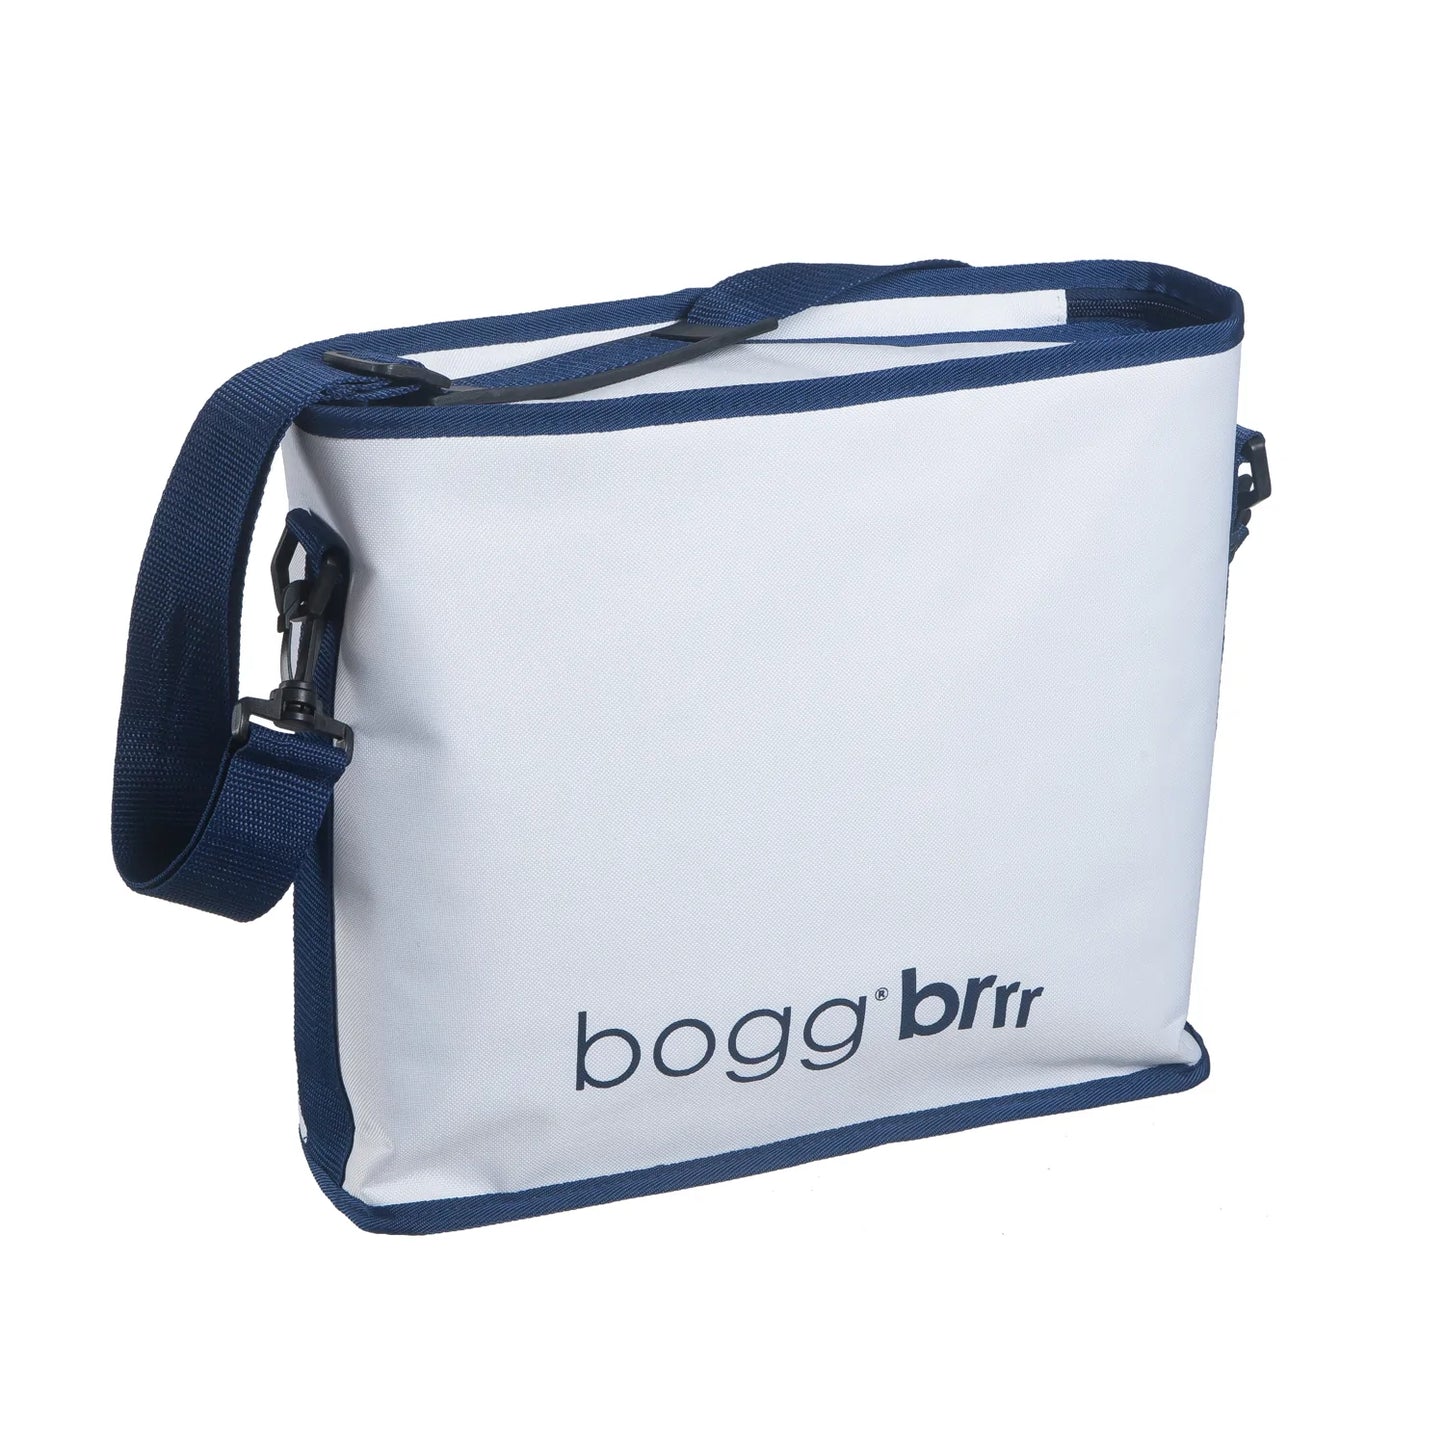 Bogg Bags Original Large Bogg Bag - Seafoam $ 89.95